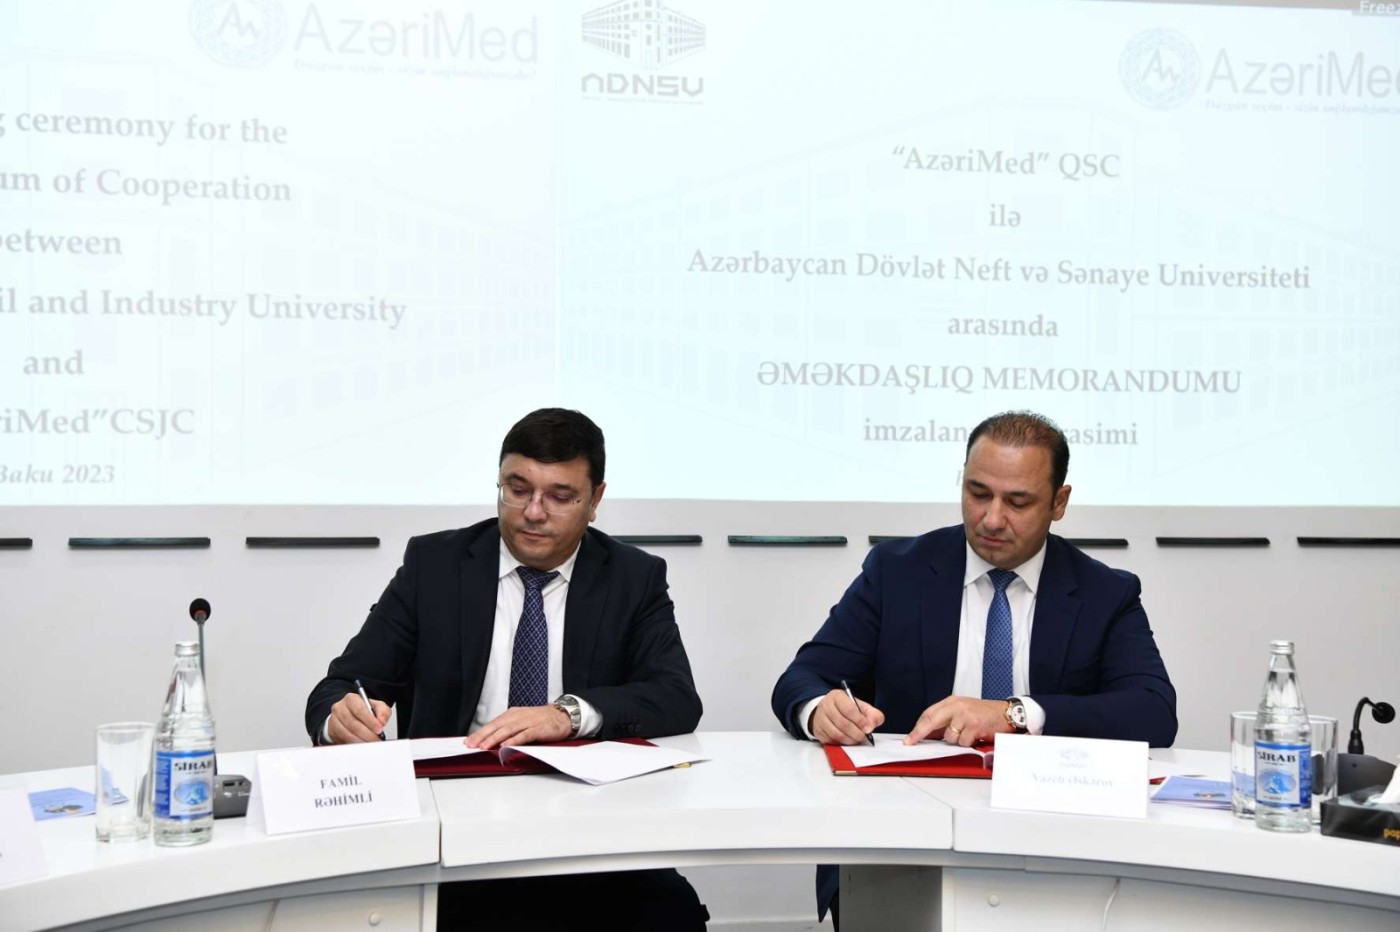 ADNSU ilə “AzeriMed” QSC arasında memorandum imzalandı - FOTOLAR